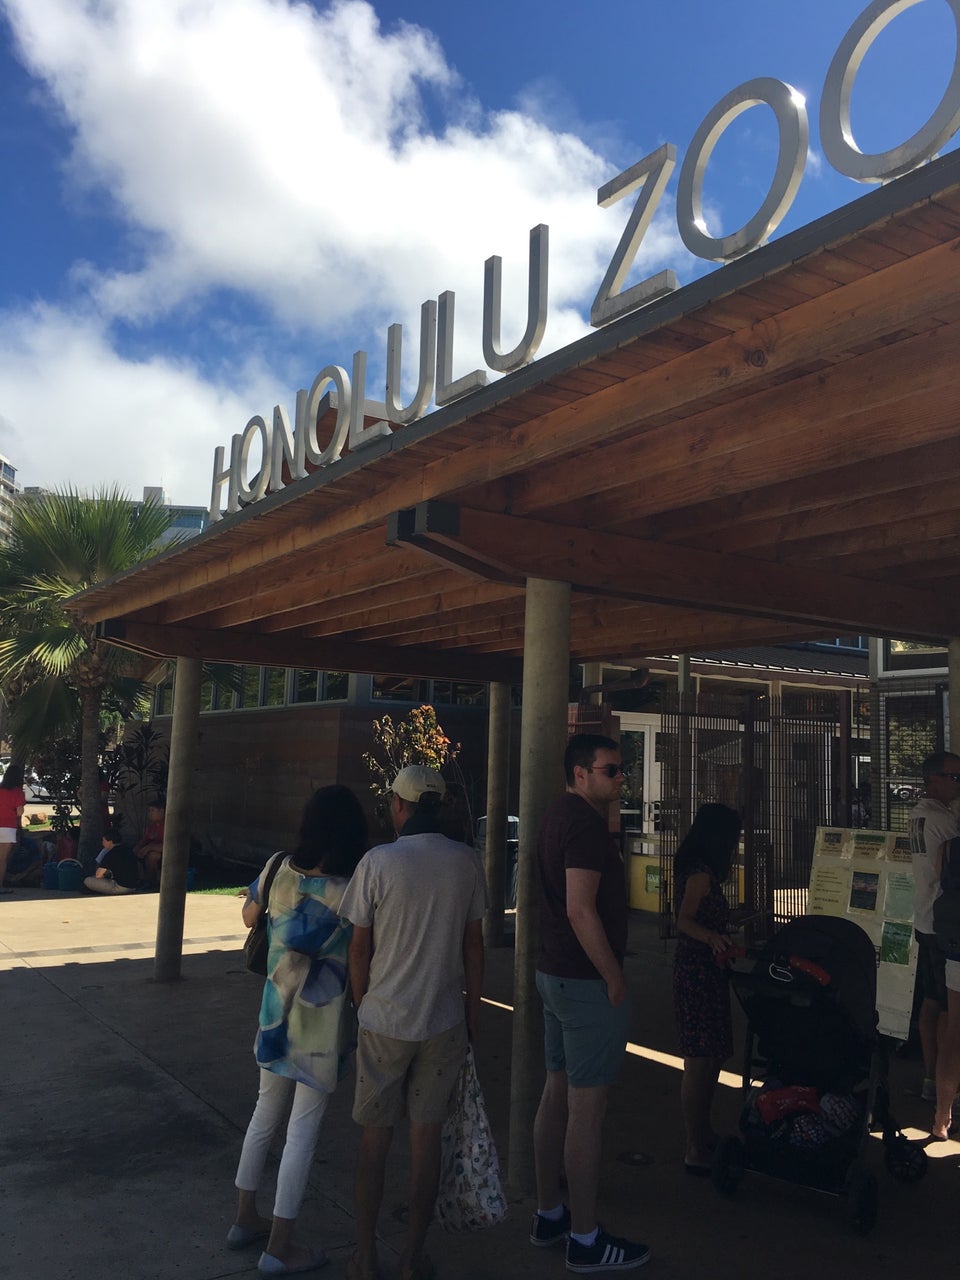 Photo of Honolulu Zoo